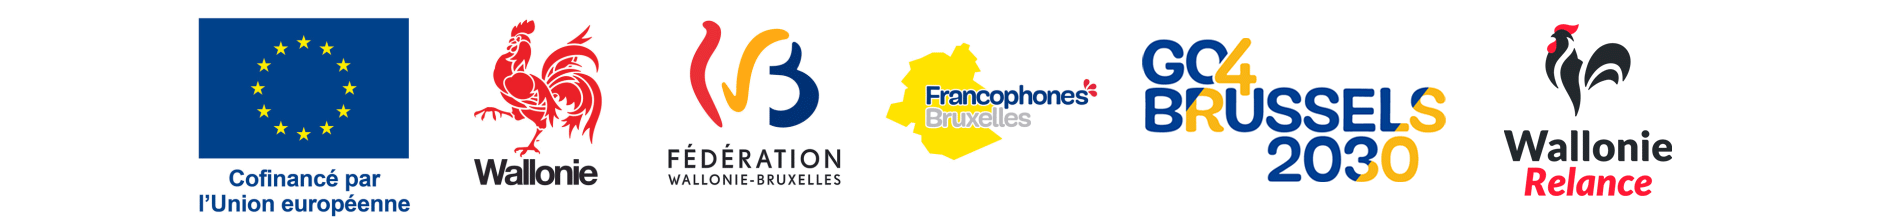 Cofinancé par l'Union européenne, Wallonie, Fédération Wallonie-Bruxelles, Francophnes Bruxelles, Go4Brussels 2030, Wallonie Relance